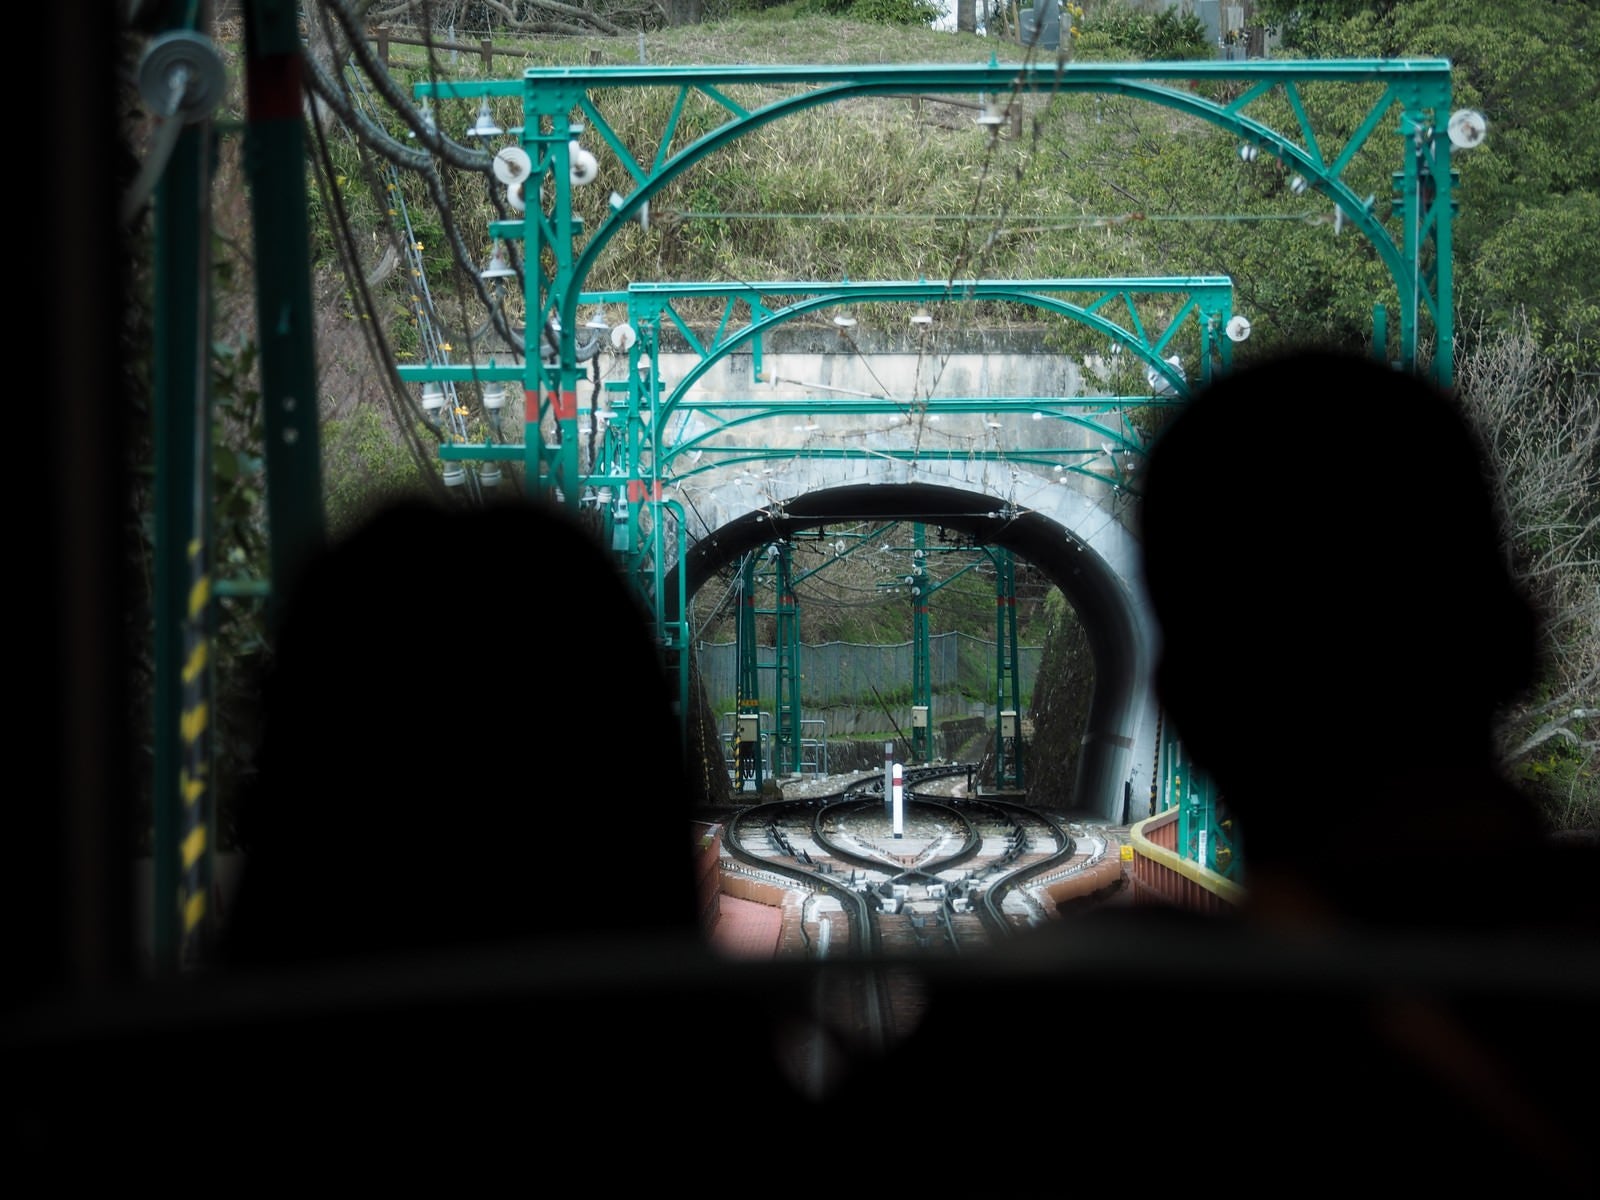 「男山ケーブルの乗客越しに見るトンネル」の写真